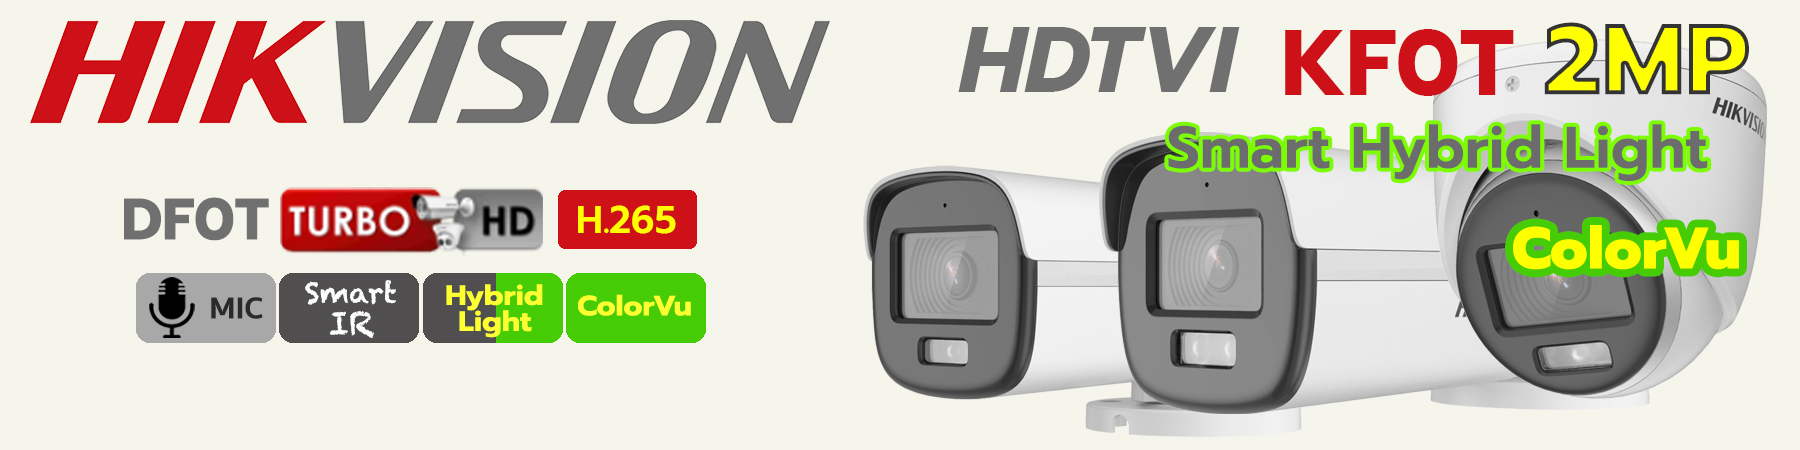 กล้องวงจรปิด Hikvision Smart Hybrid Light, กล้อง Hikvision ภาพสีกลางคืน, Hikvision กลางคืน 2ระบบ, DS-2CE10DF0T-LFS, DS-2CE70DF0T-LMFS, DS-2CE12DF0T-LFS